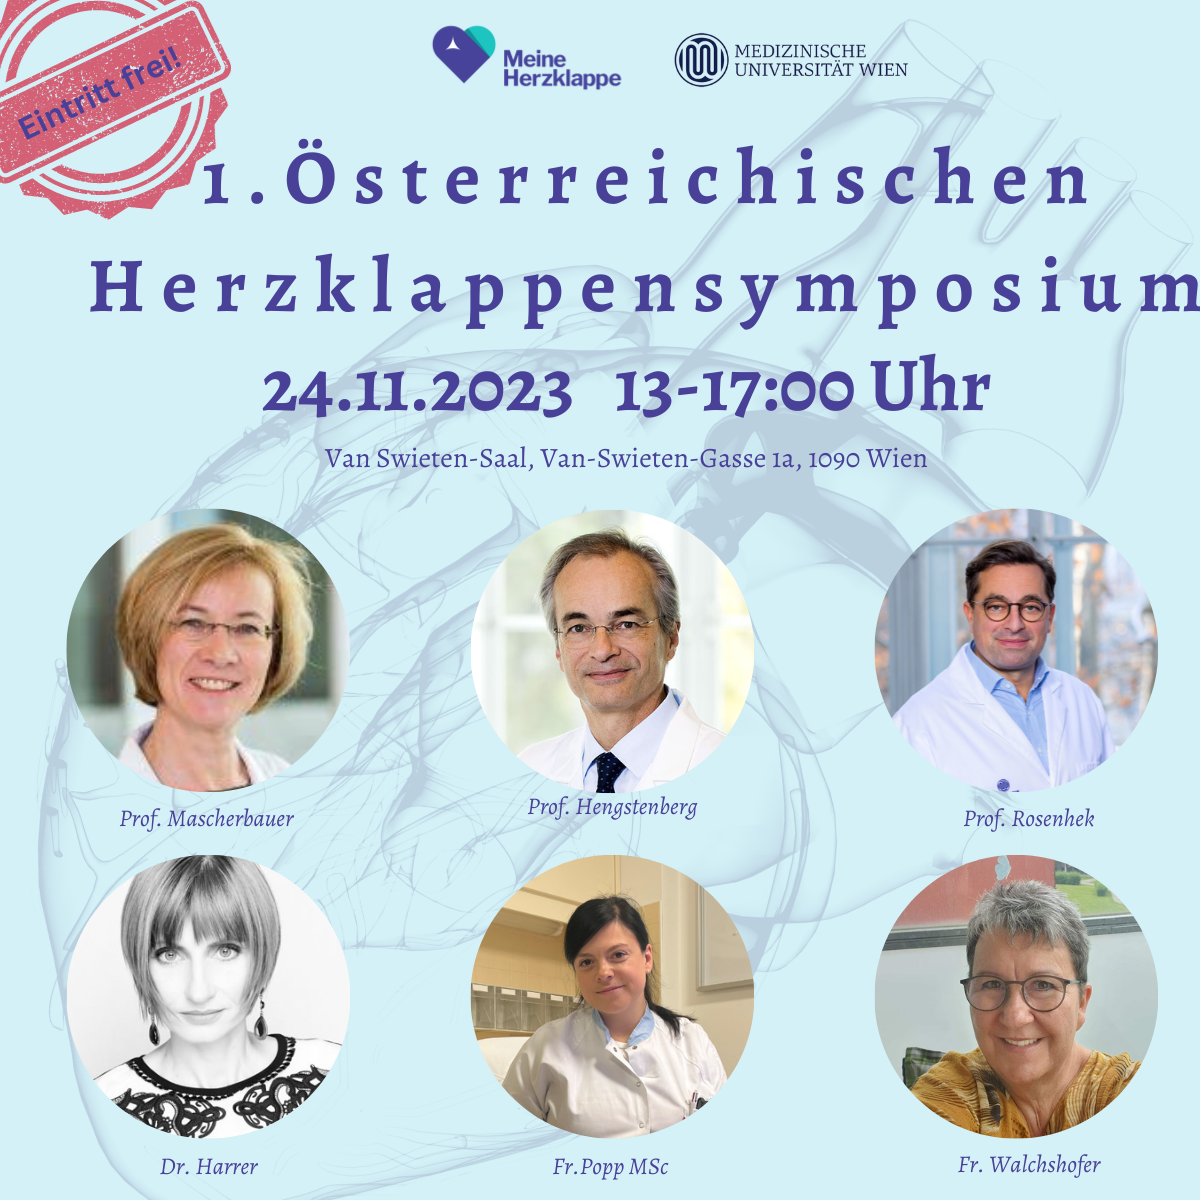 Noch 1 Woche bis zum 1. Österreichischem Herzklappensymposium